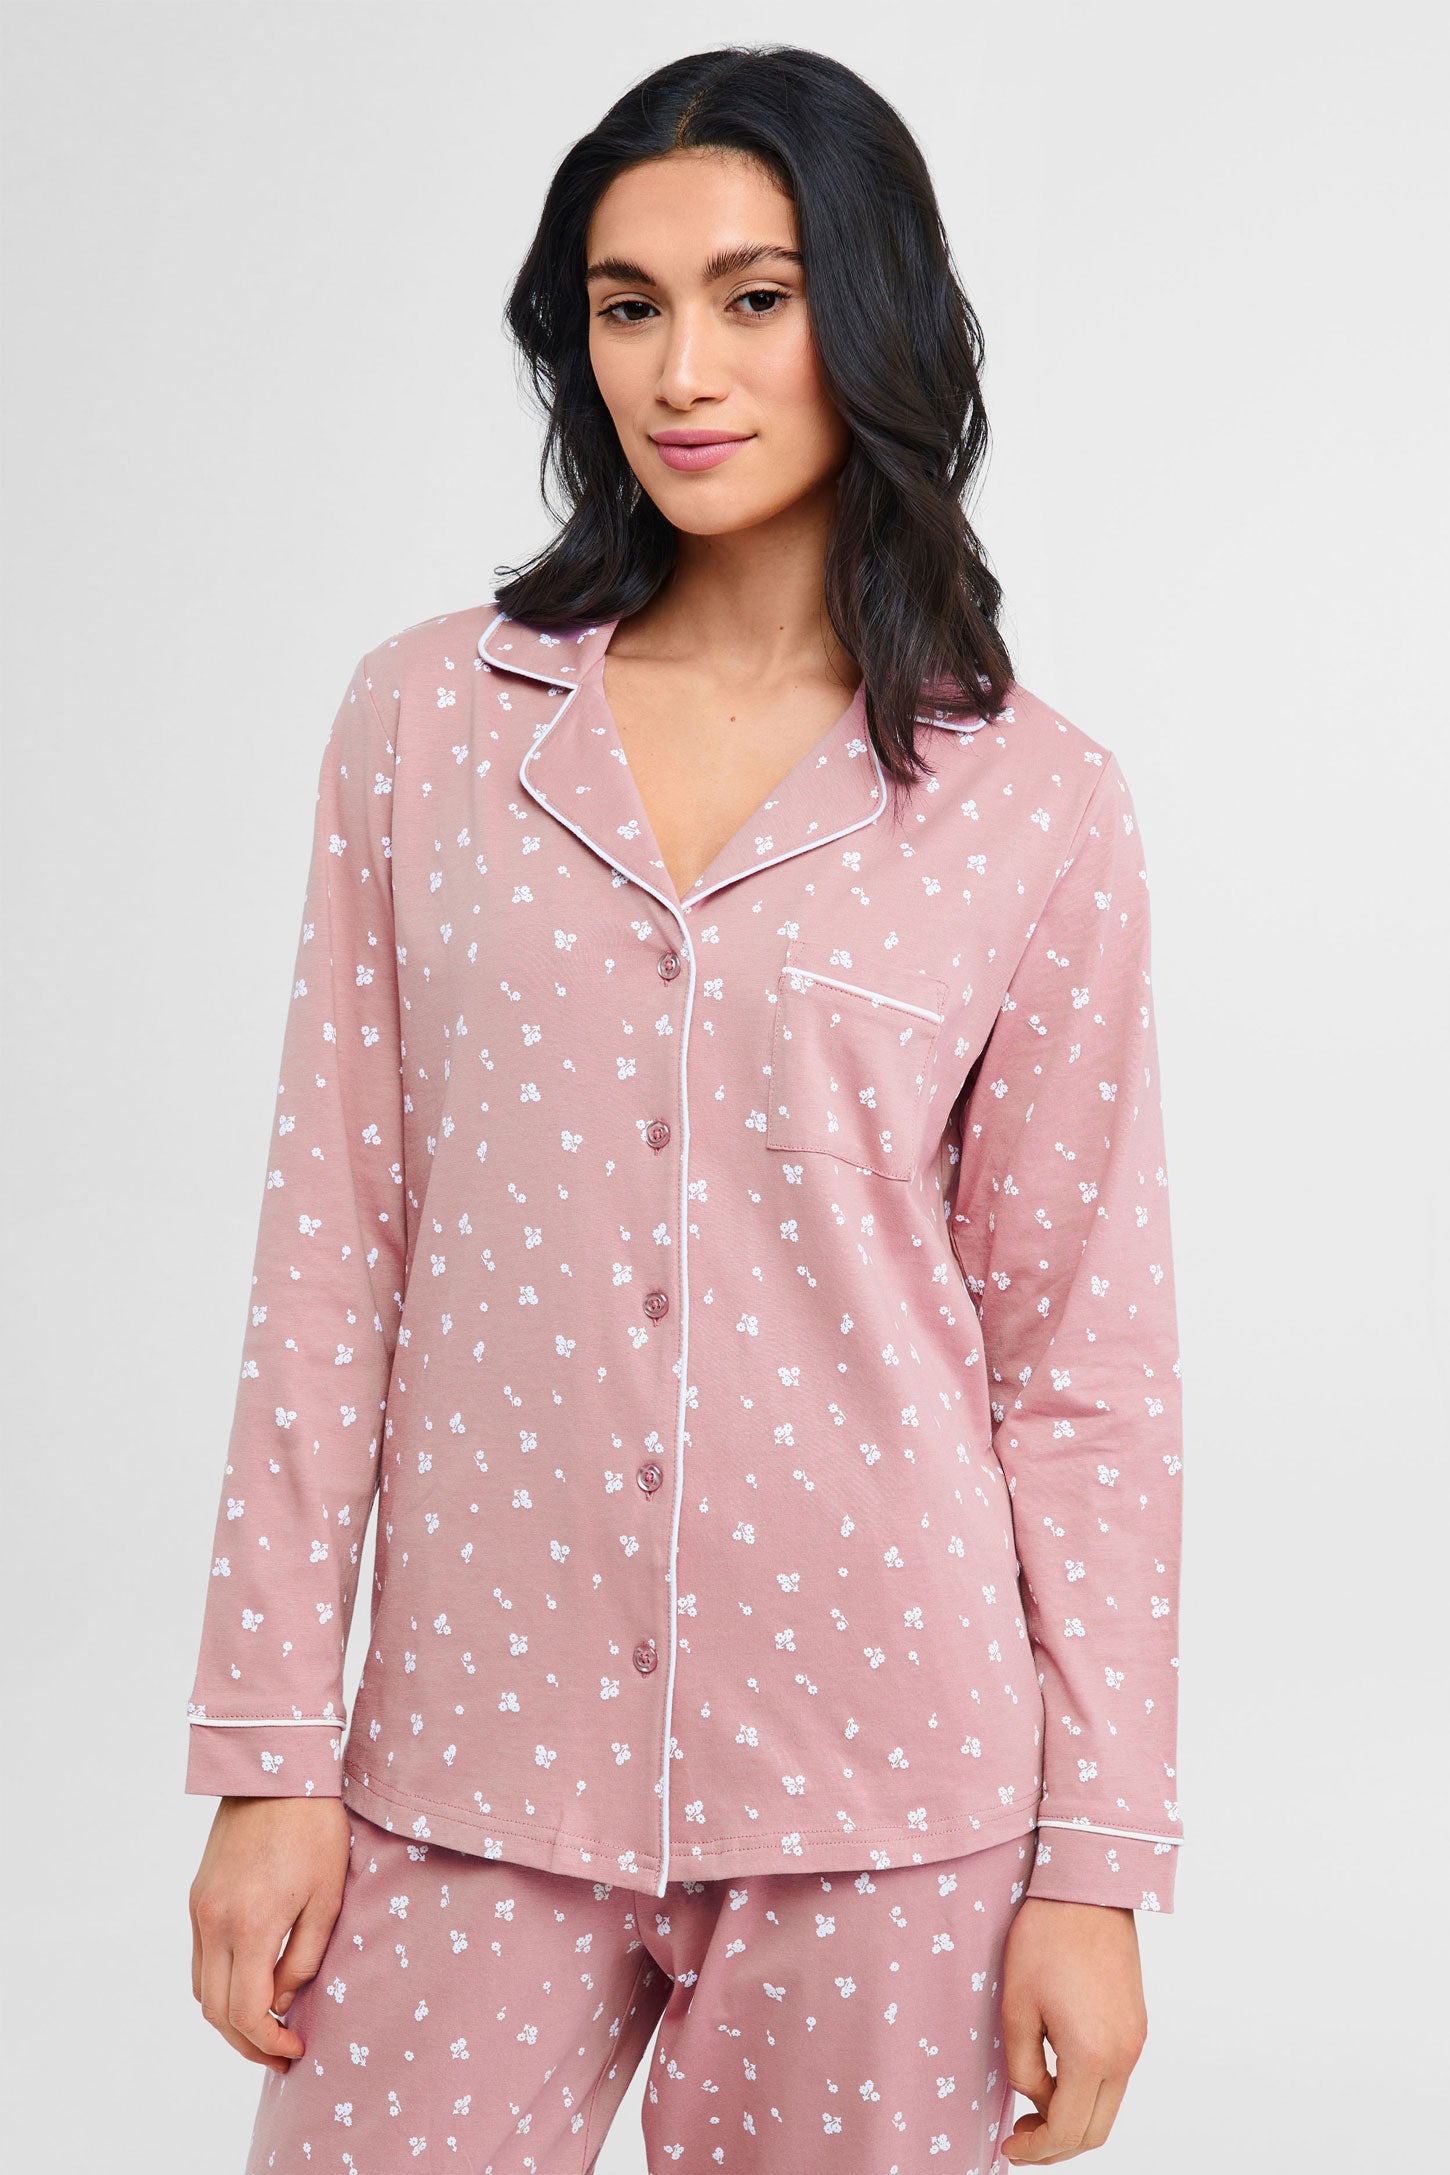 Pyjama 2-pièces chemise et pantalon coton - Femme && ROSE CENDRE